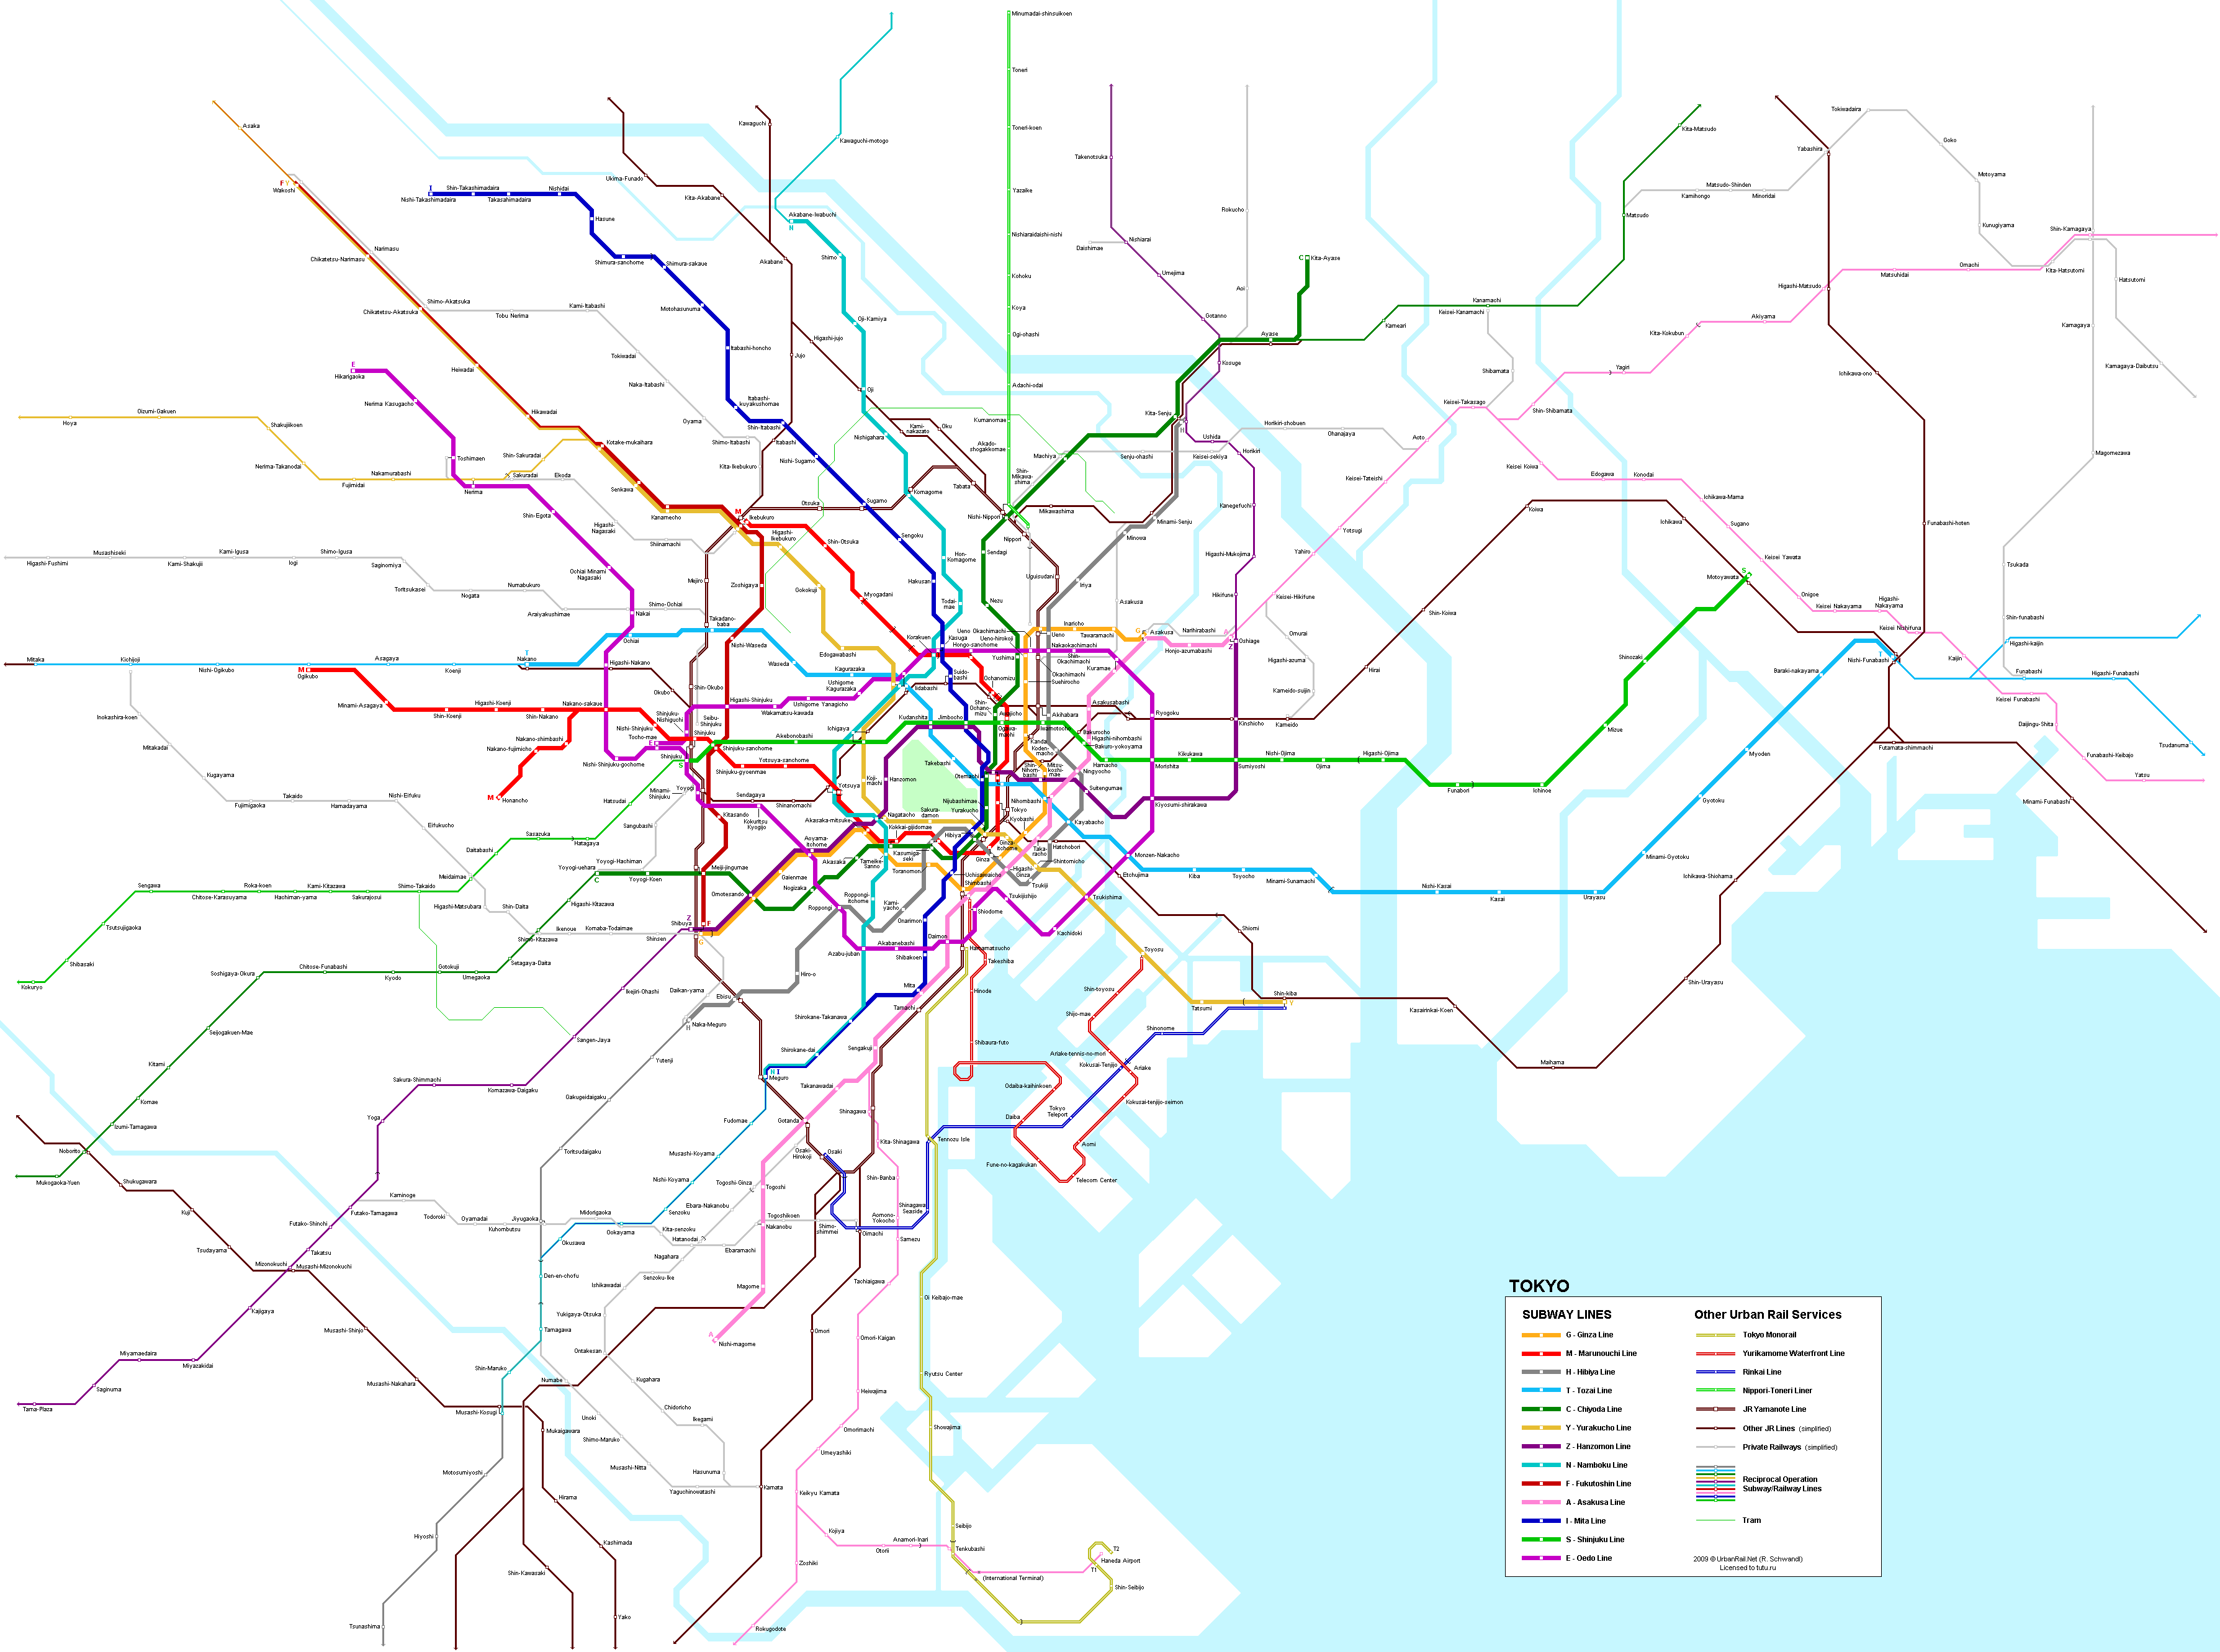 Карта метро г.Токио. Схема метрополитена: Токио.